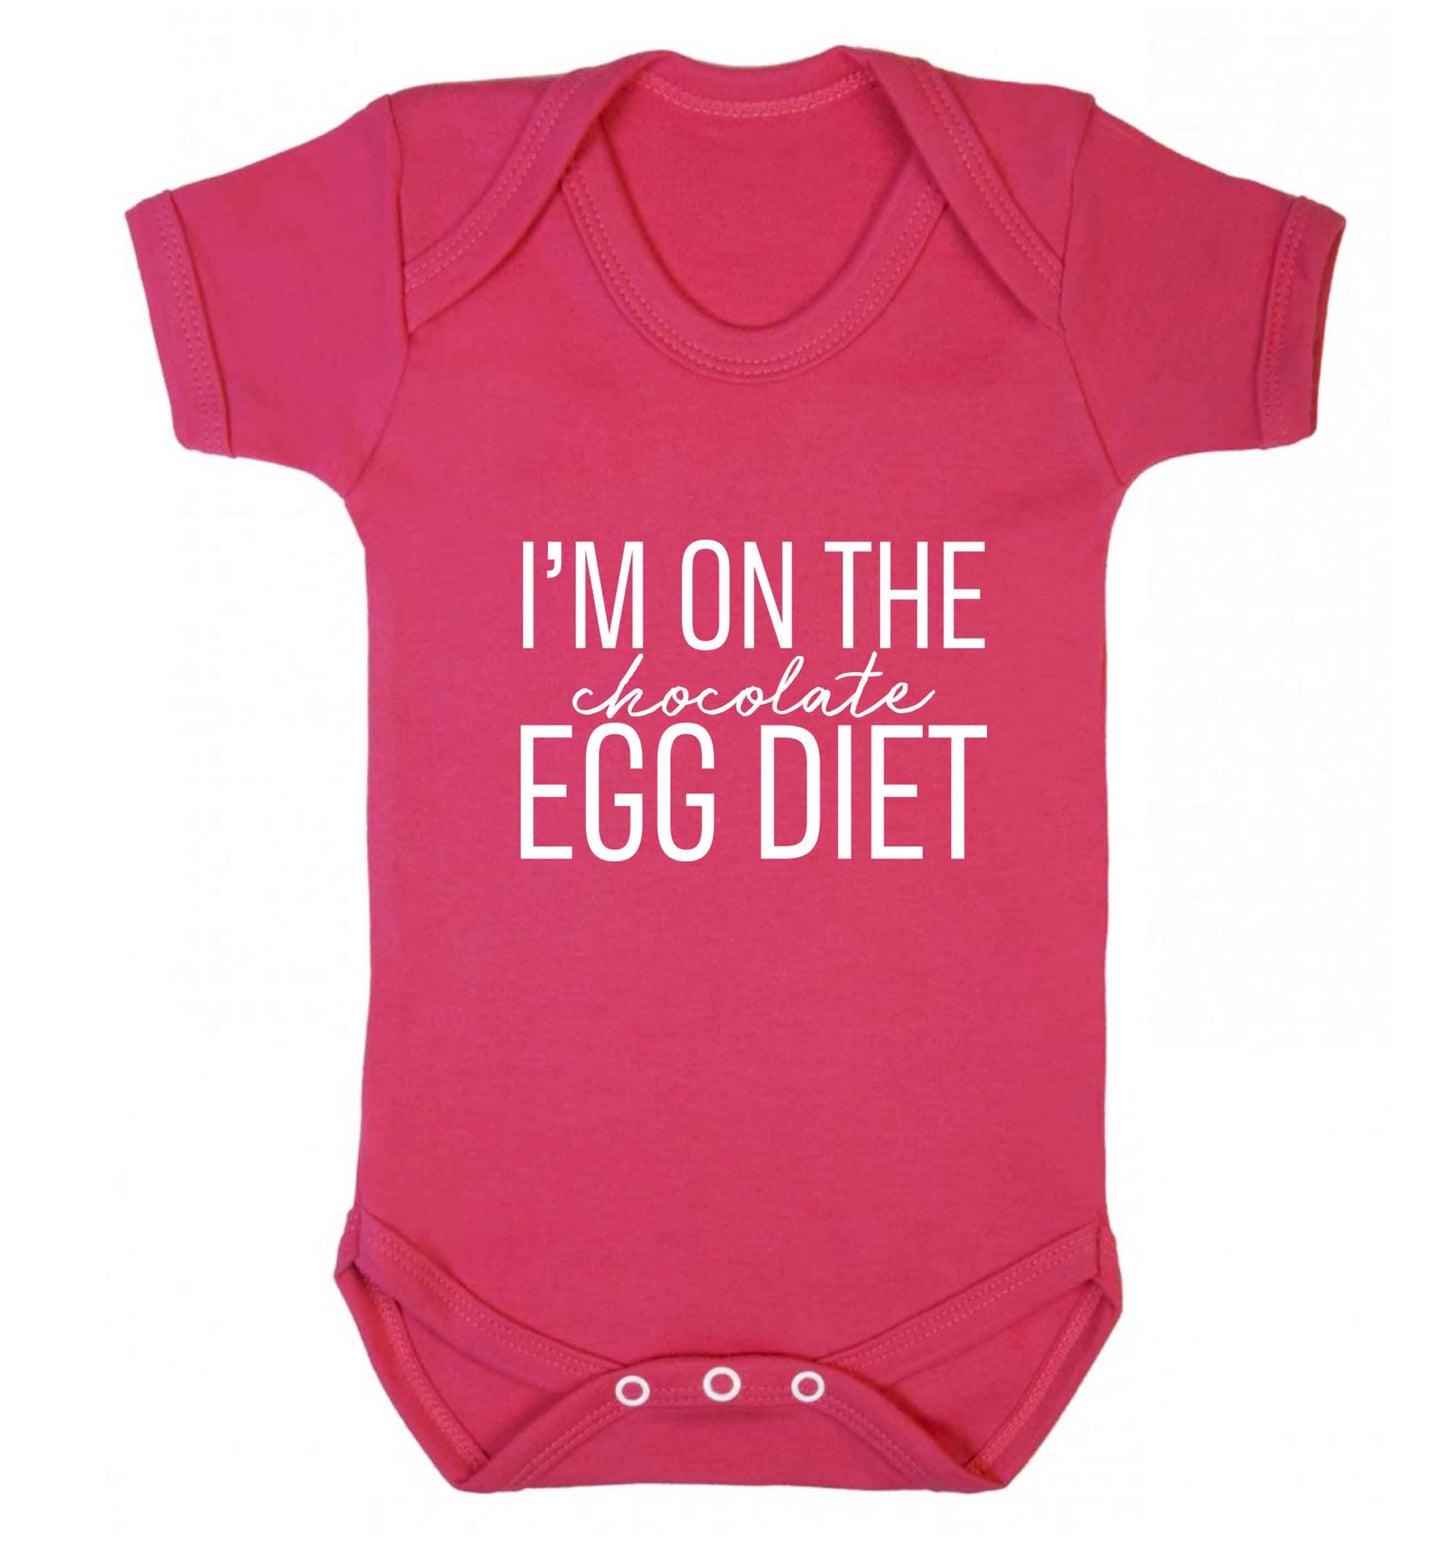 I'm on the chocolate egg diet baby vest dark pink 18-24 months